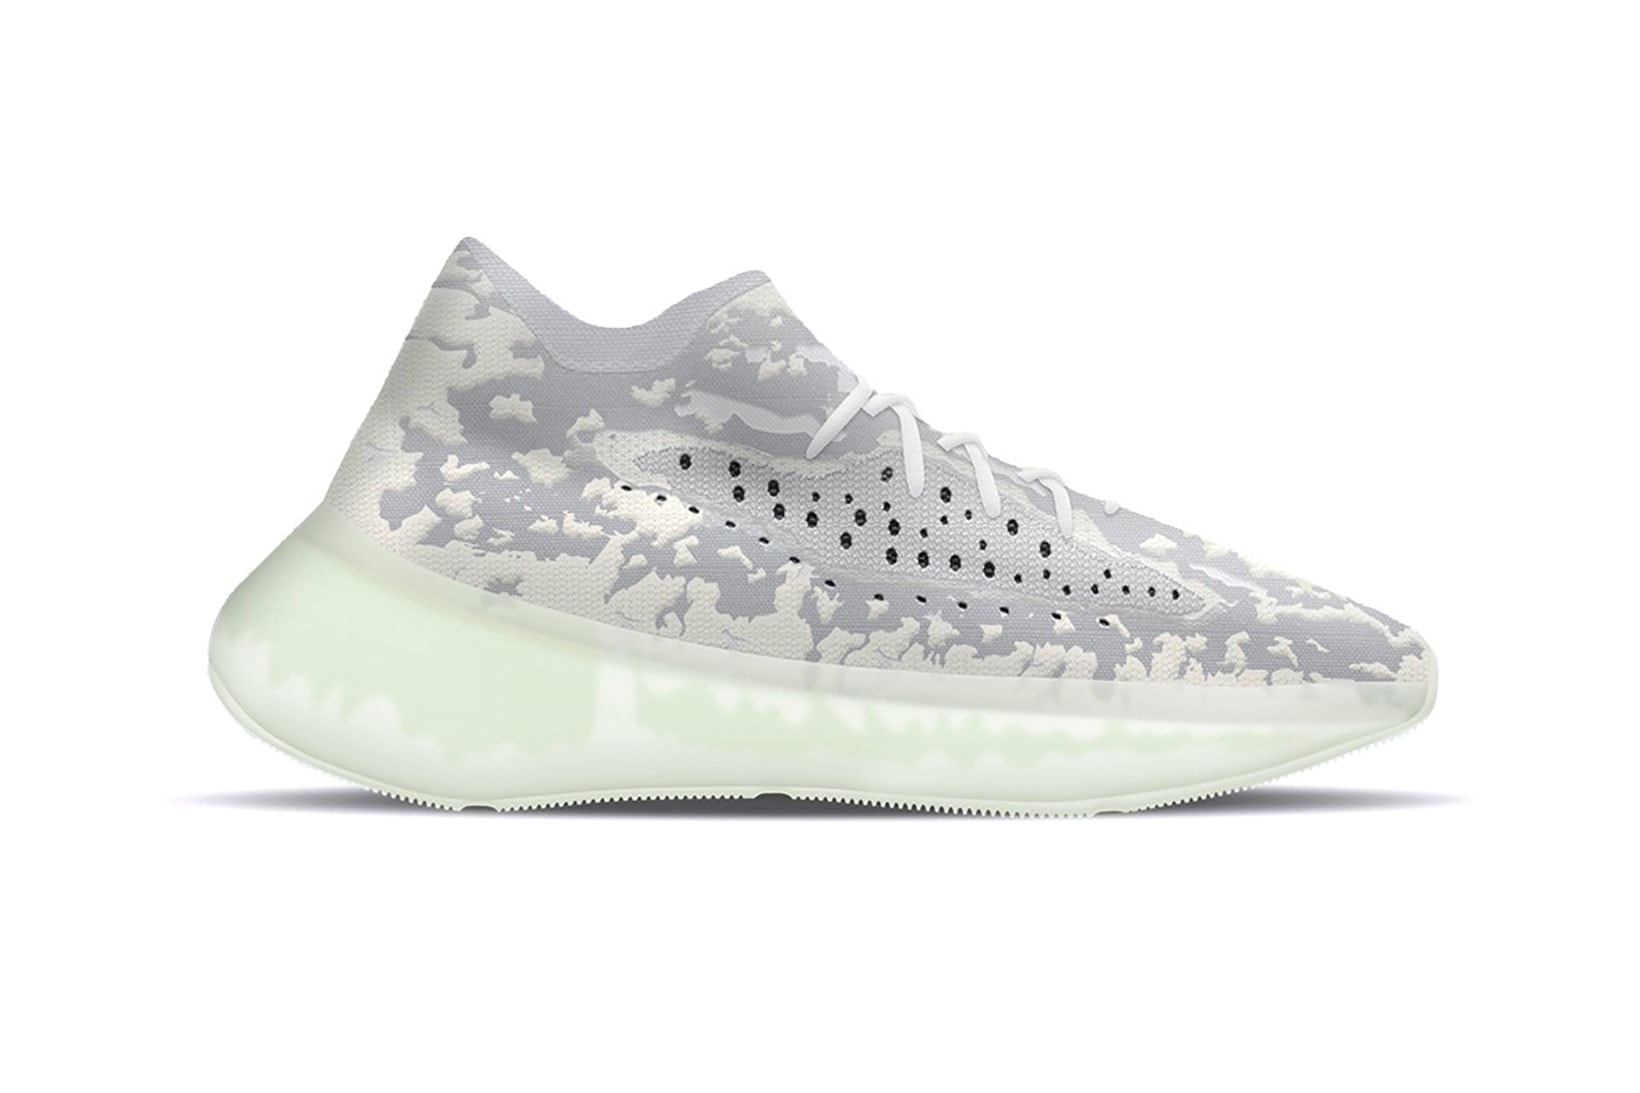 adidas yeezy boost 380 alien white grey stockx sneakers shoes footwear sneakerhead